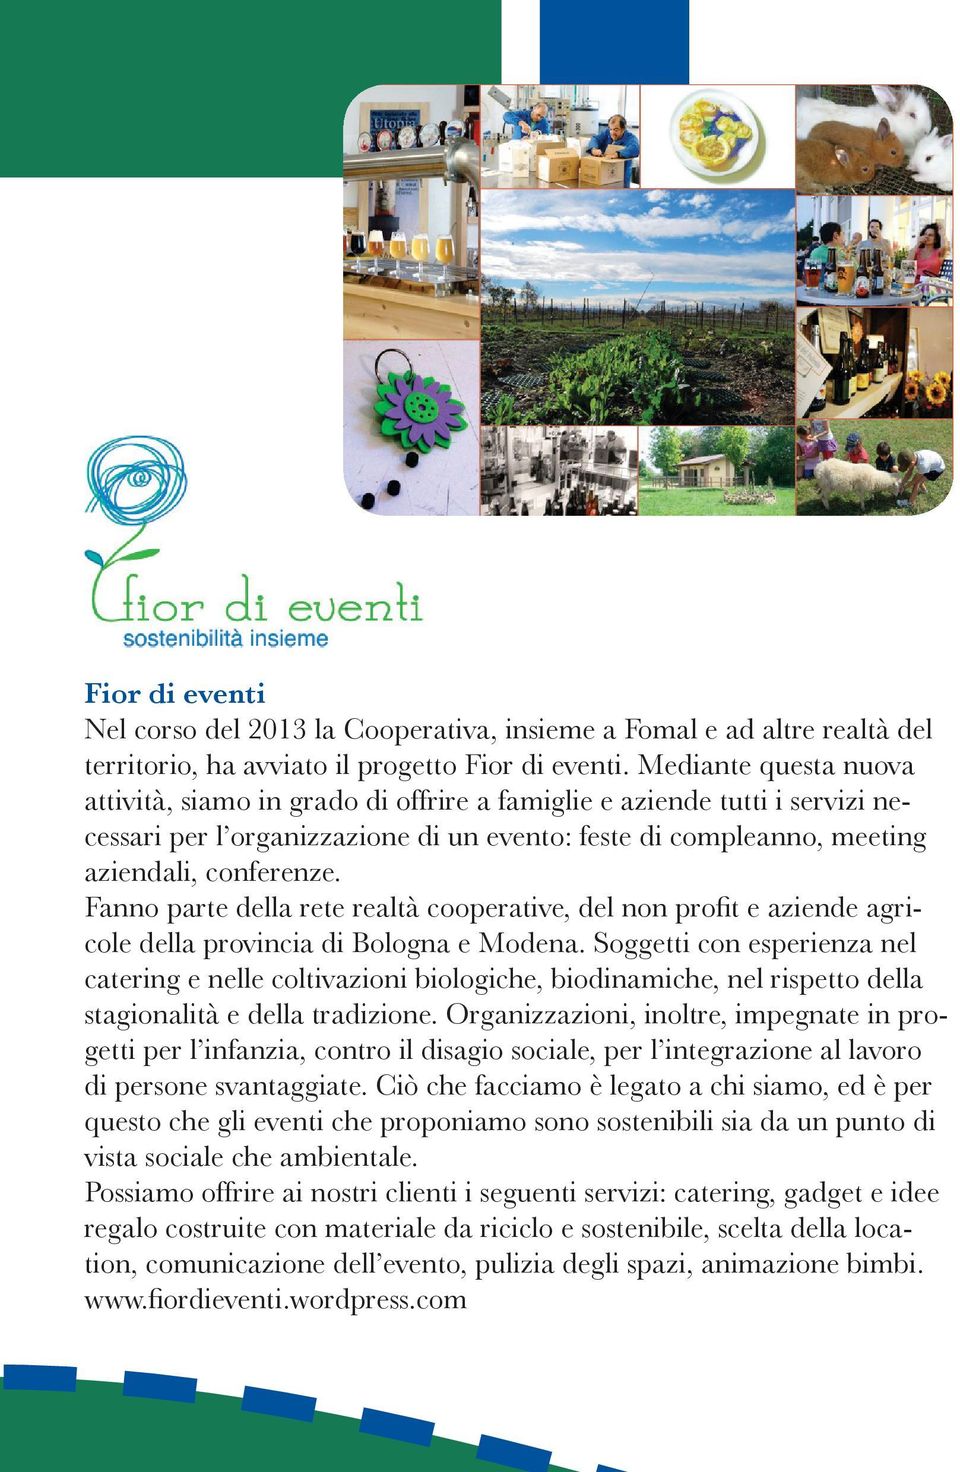 Fanno parte della rete realtà cooperative, del non profit e aziende agricole della provincia di Bologna e Modena.